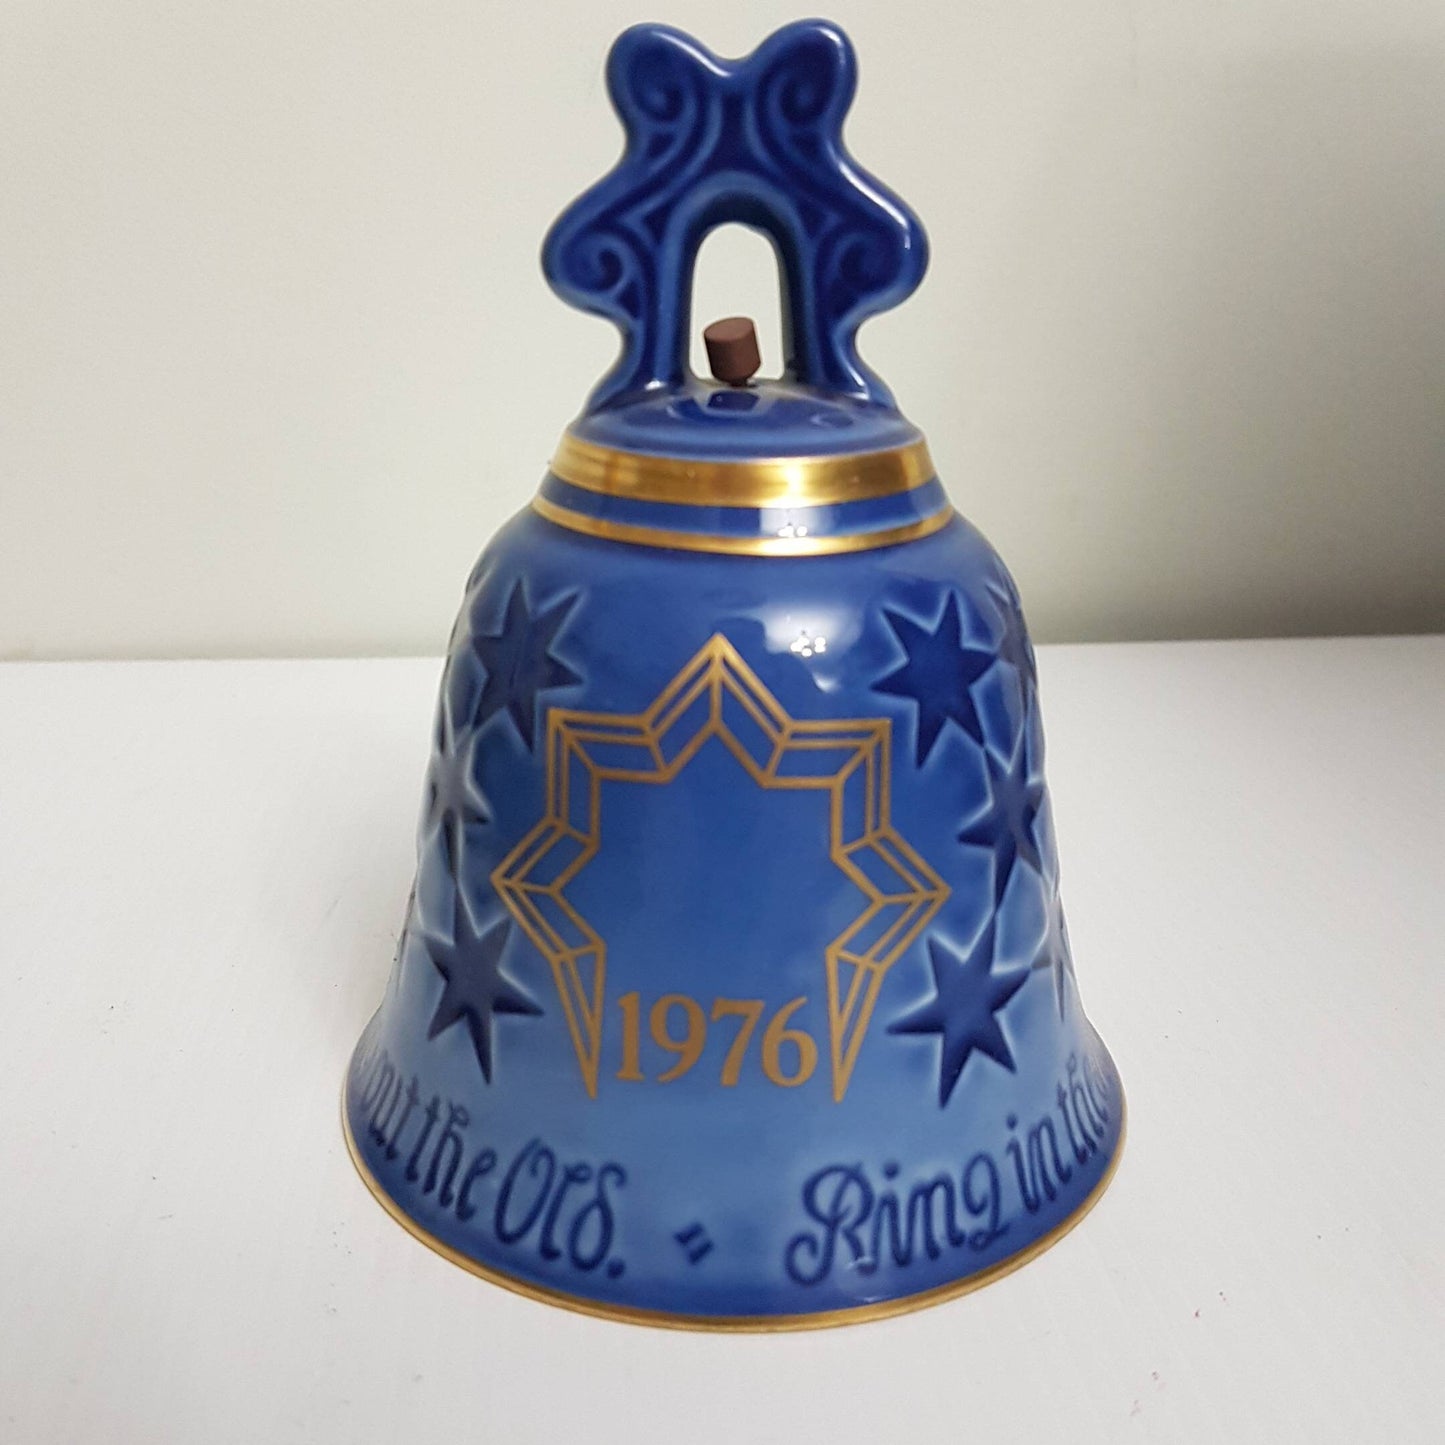 copenhagen porcelain china bell made in denmark